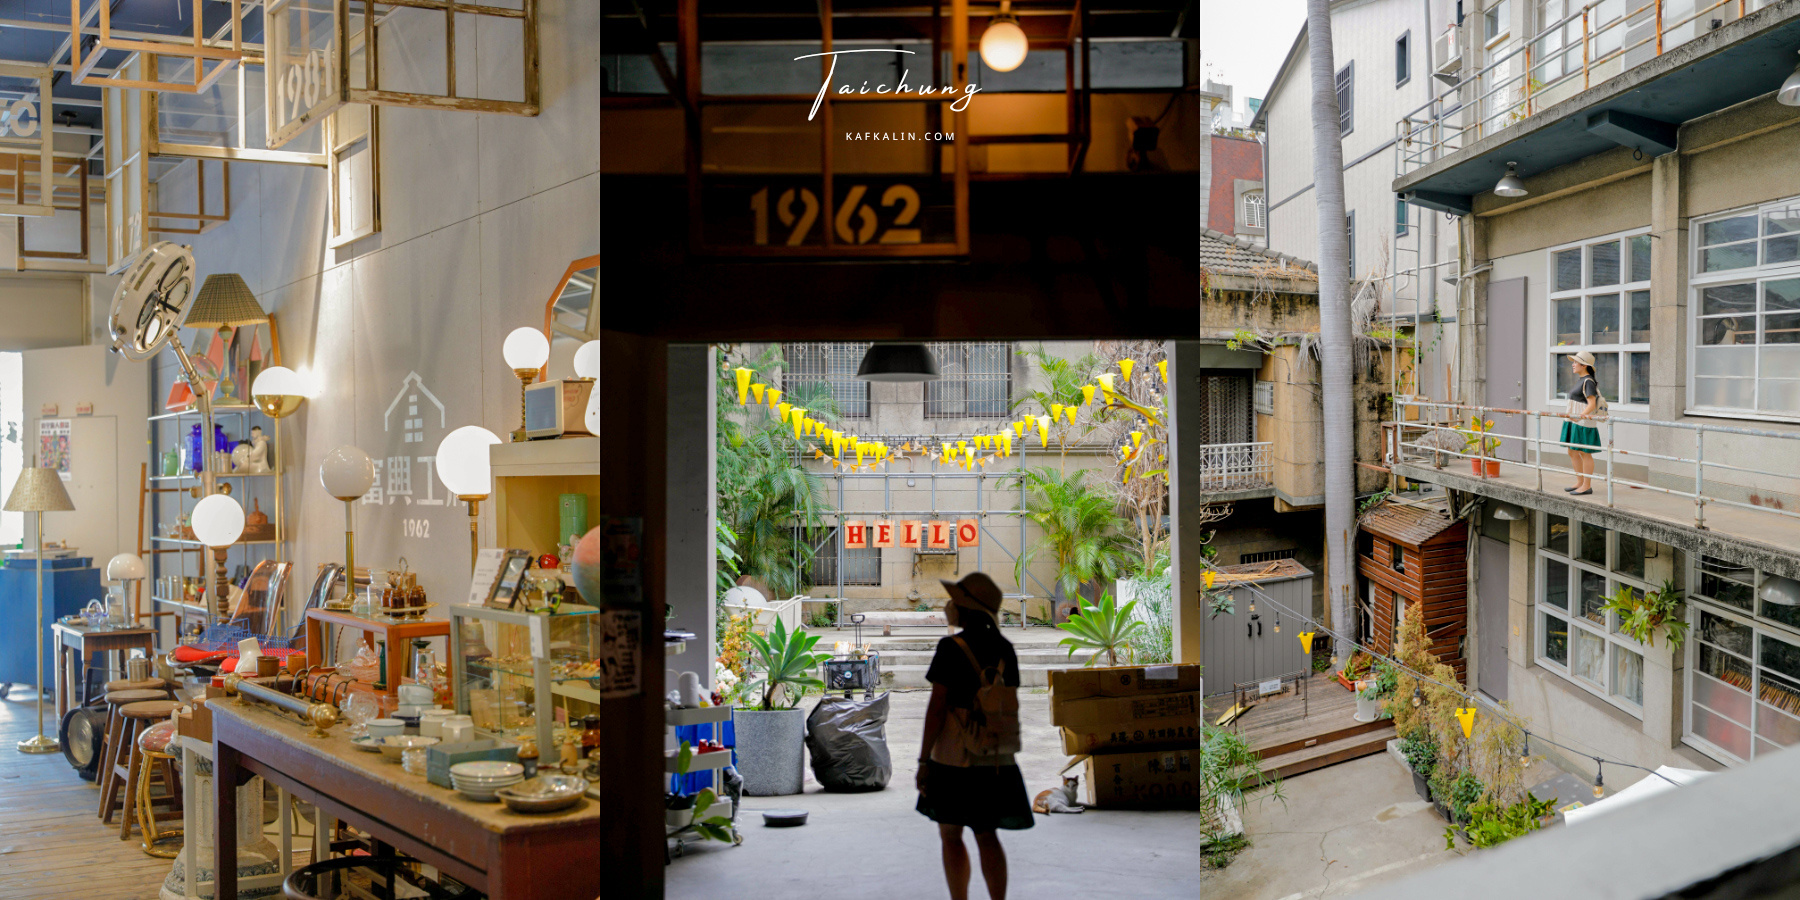 台中富興工廠1962，老工廠新景點咖啡餐廳與必逛小店停車 @卡夫卡愛旅行